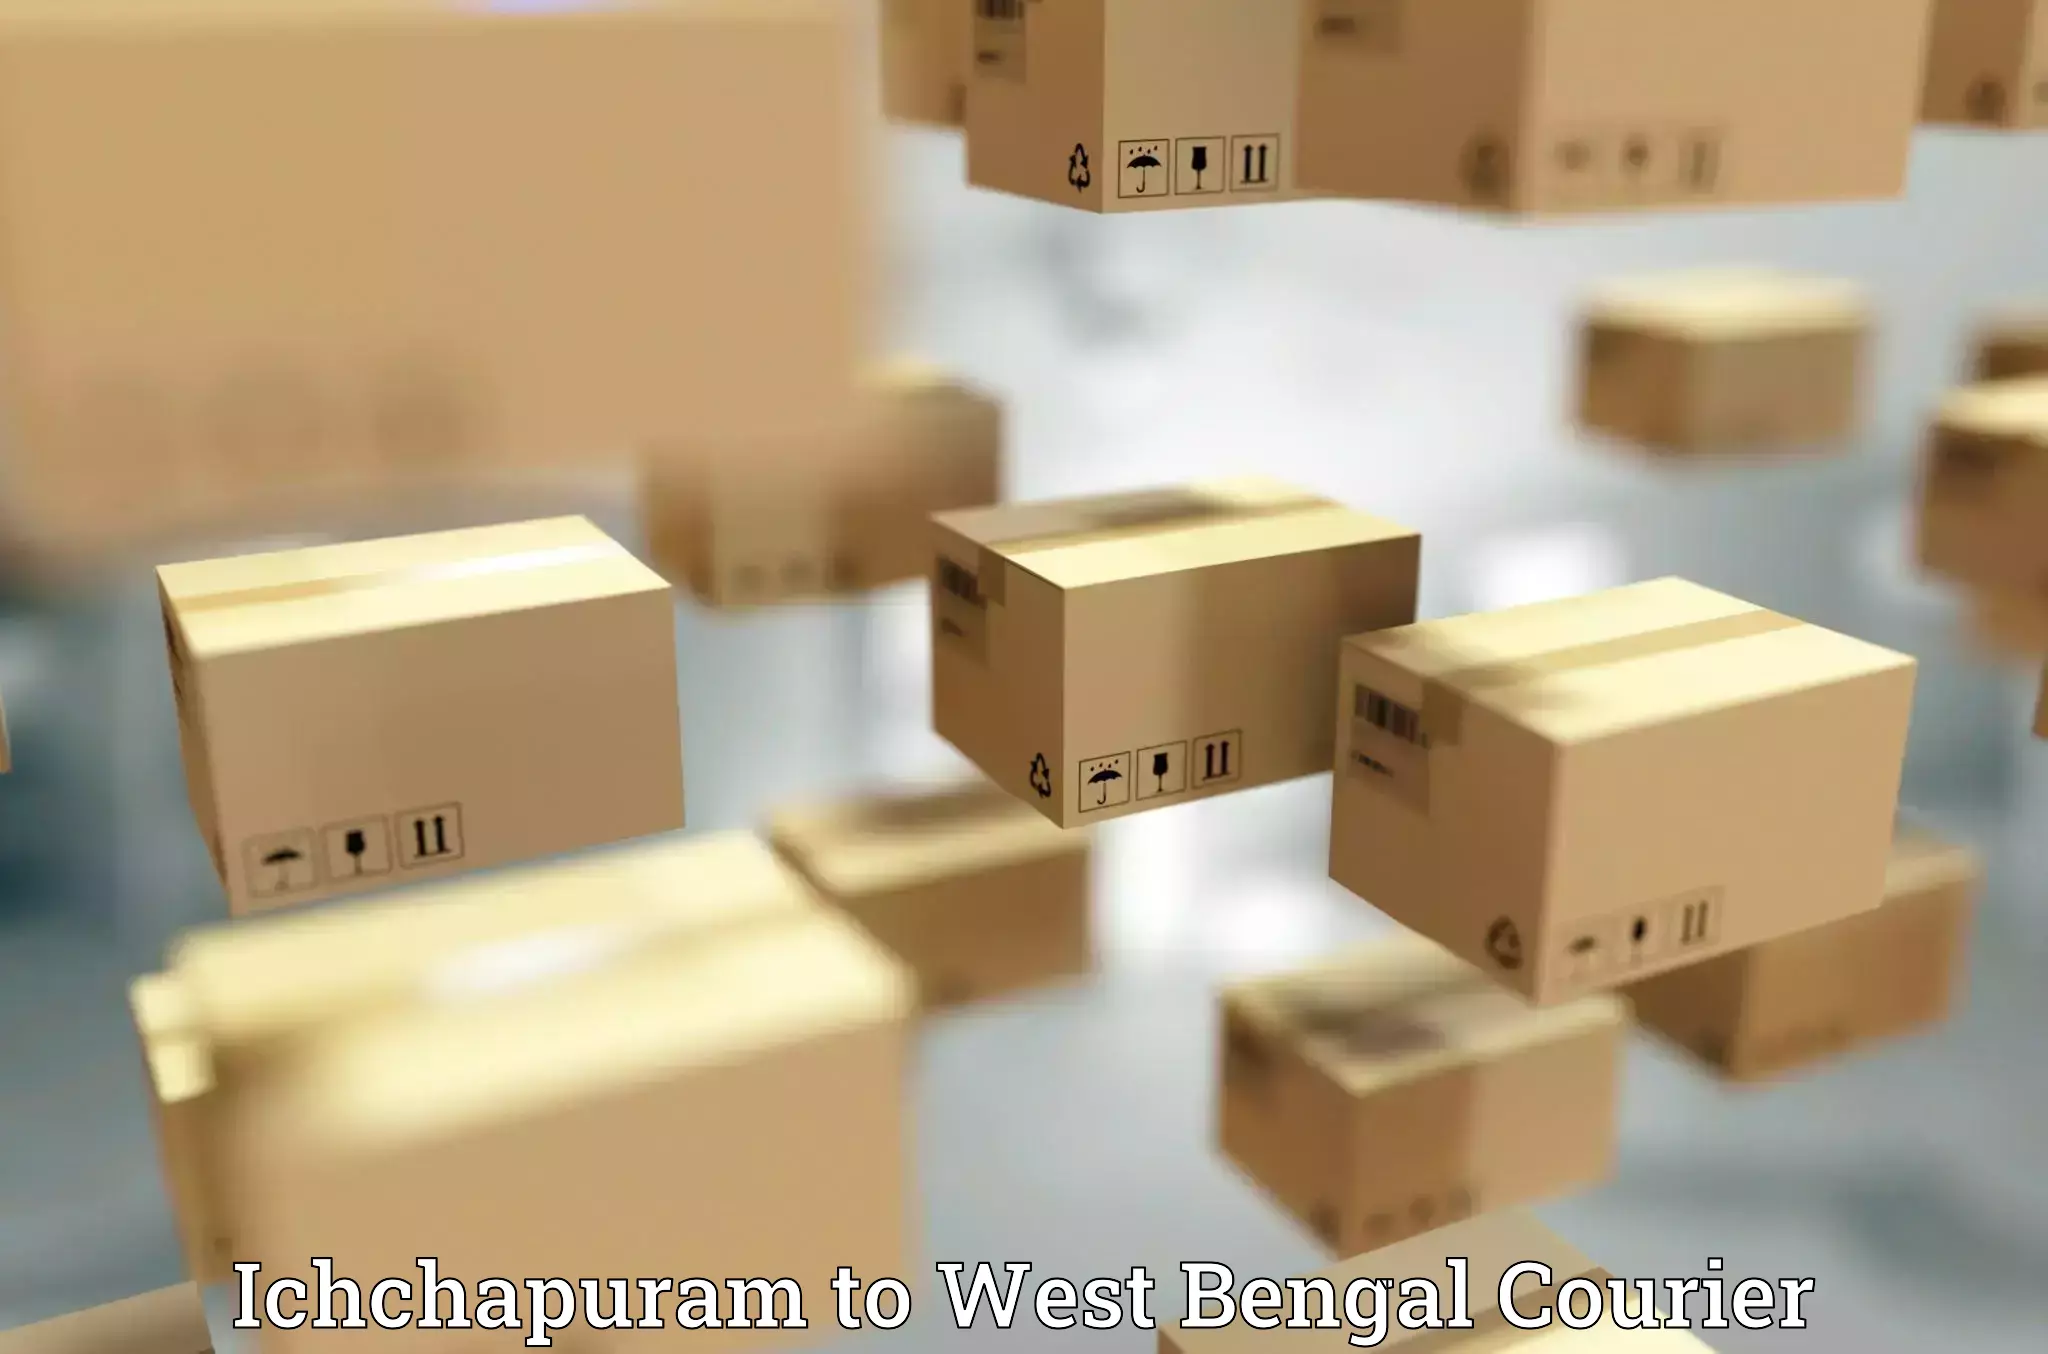 Flexible delivery schedules Ichchapuram to Kolkata